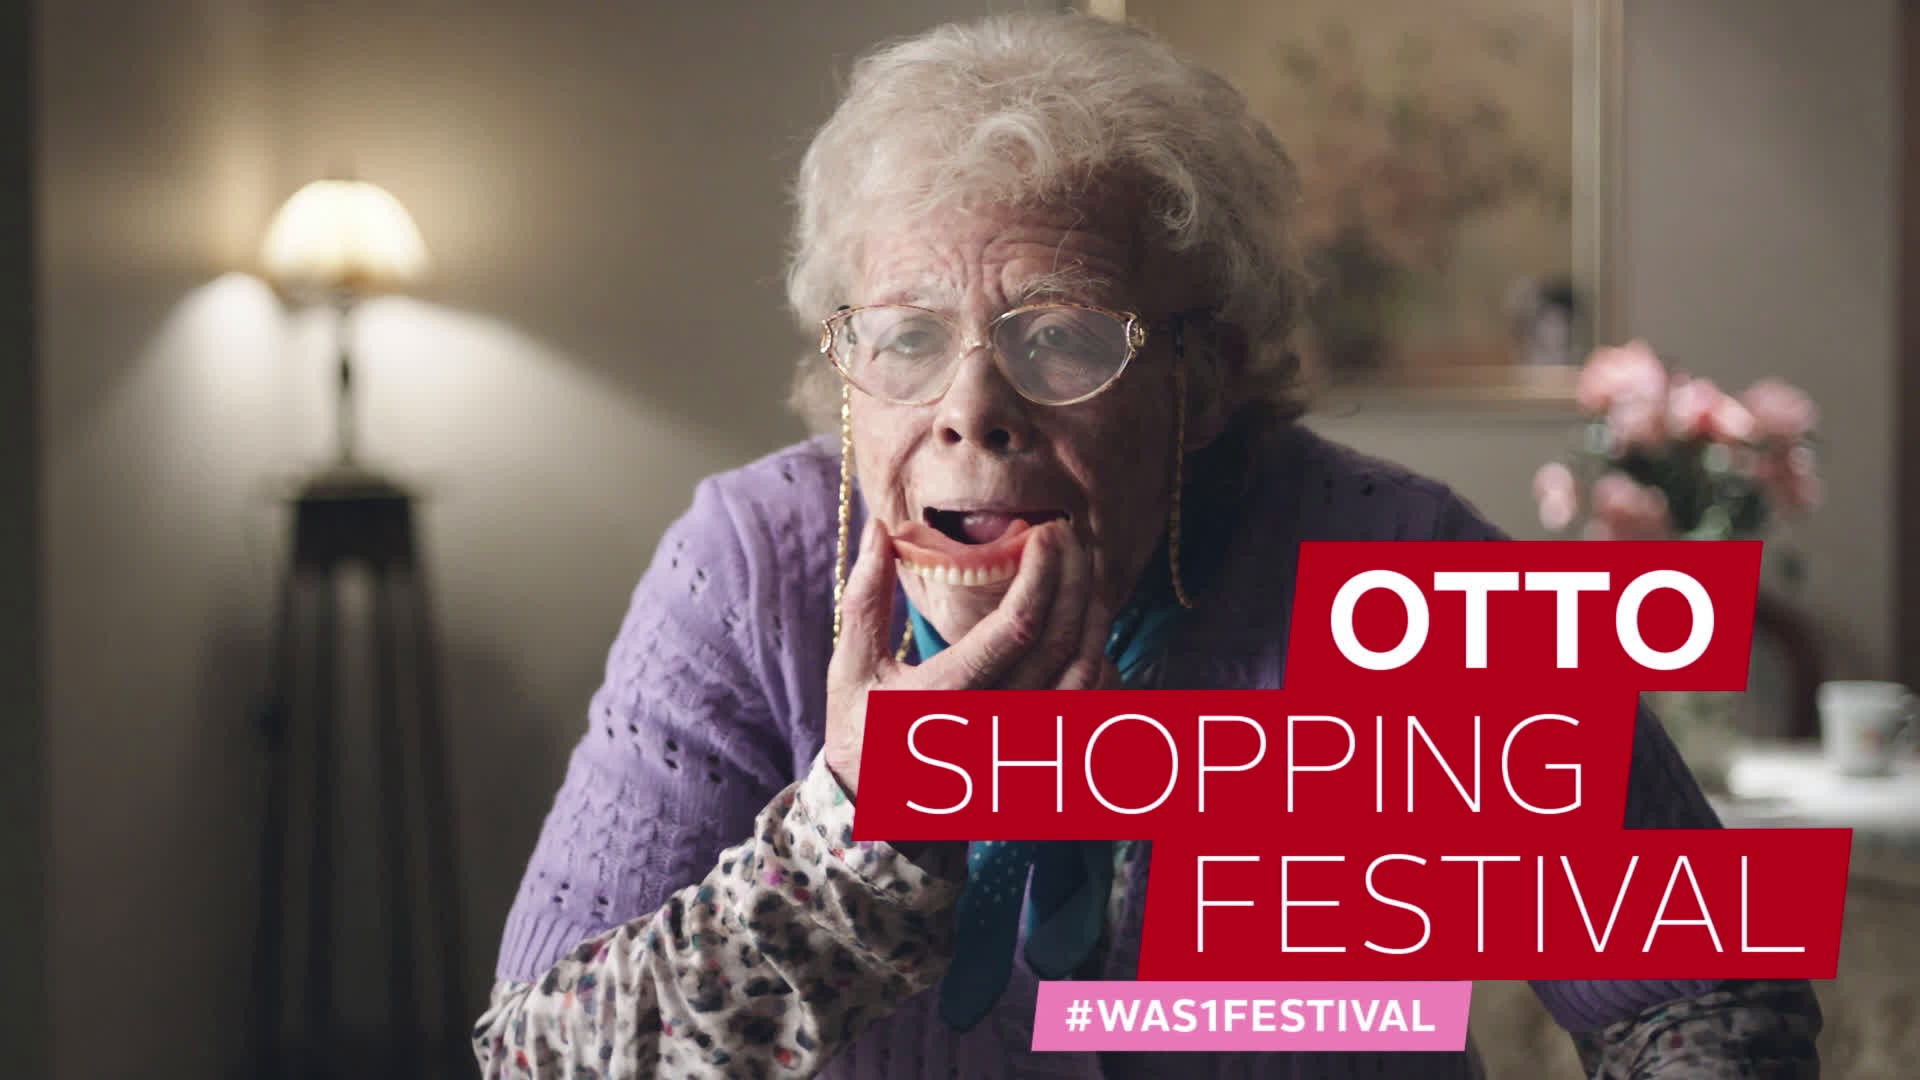 OTTO Shopping Festival "Granny"